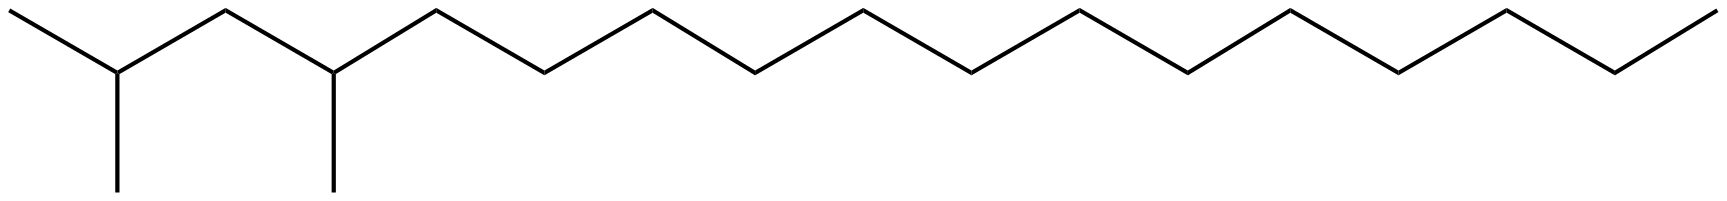 Image of heptadecane, 2,4-dimethyl-